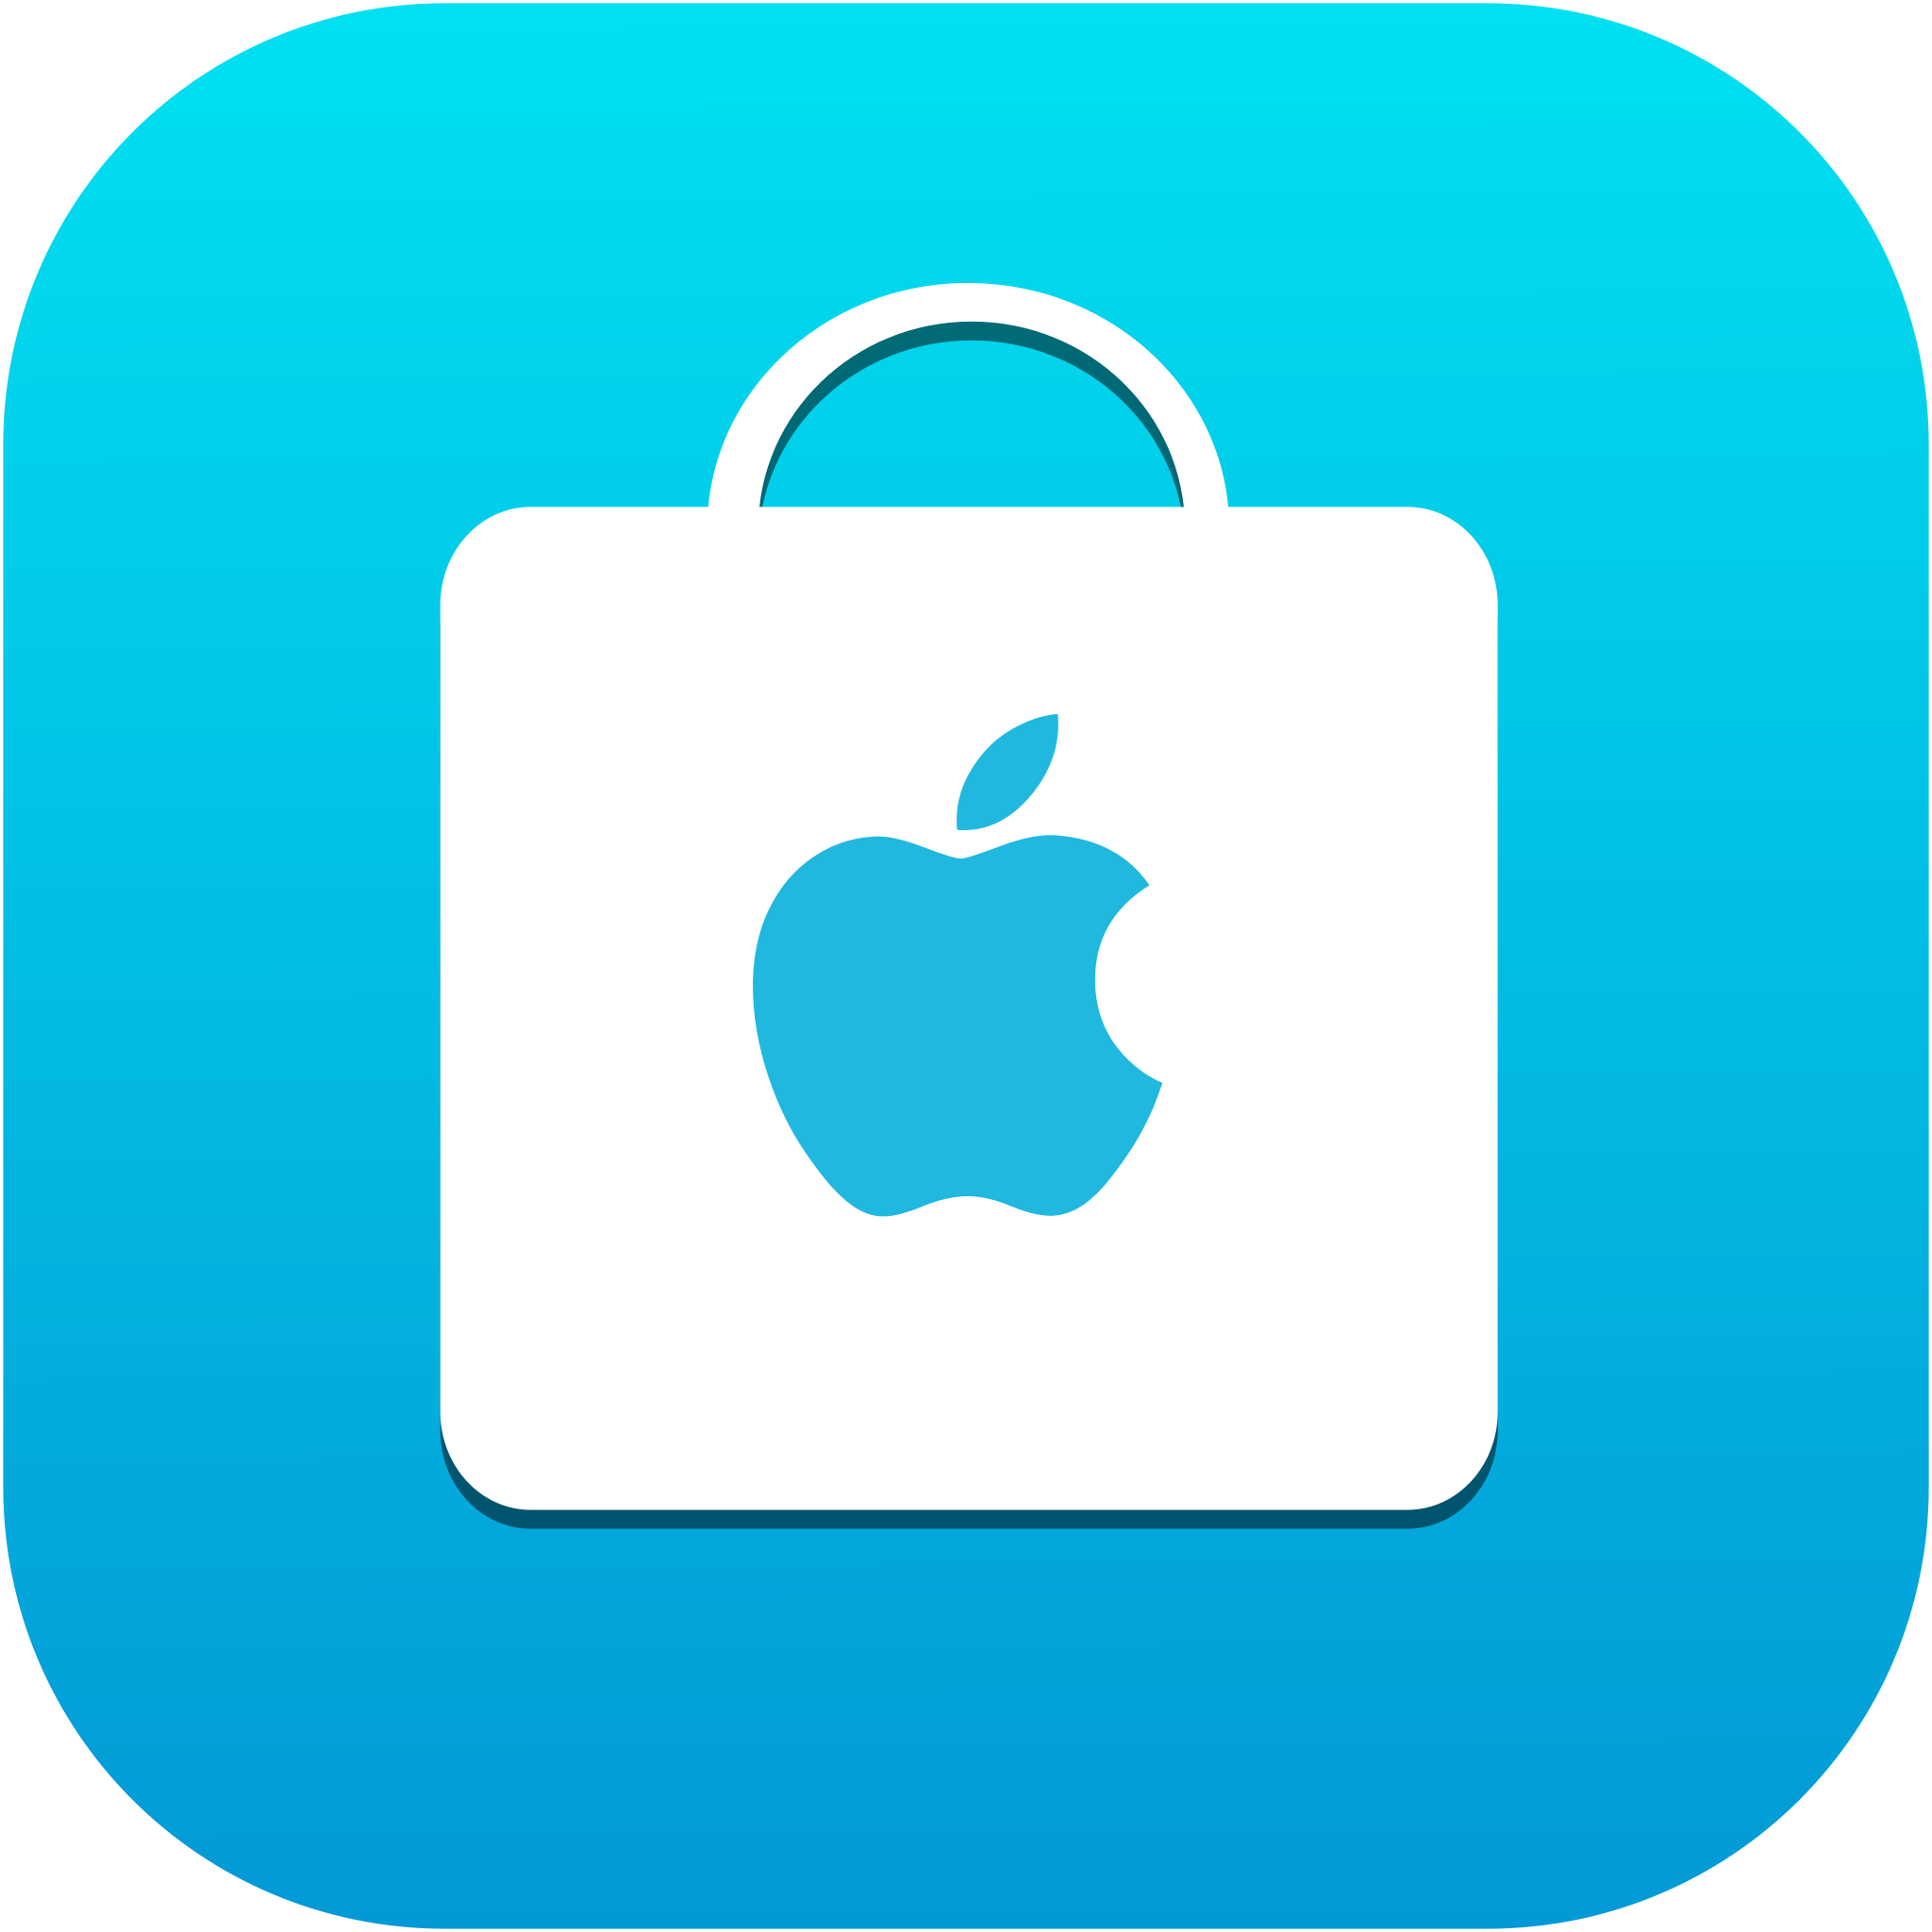 Apple Store - Wikipedia